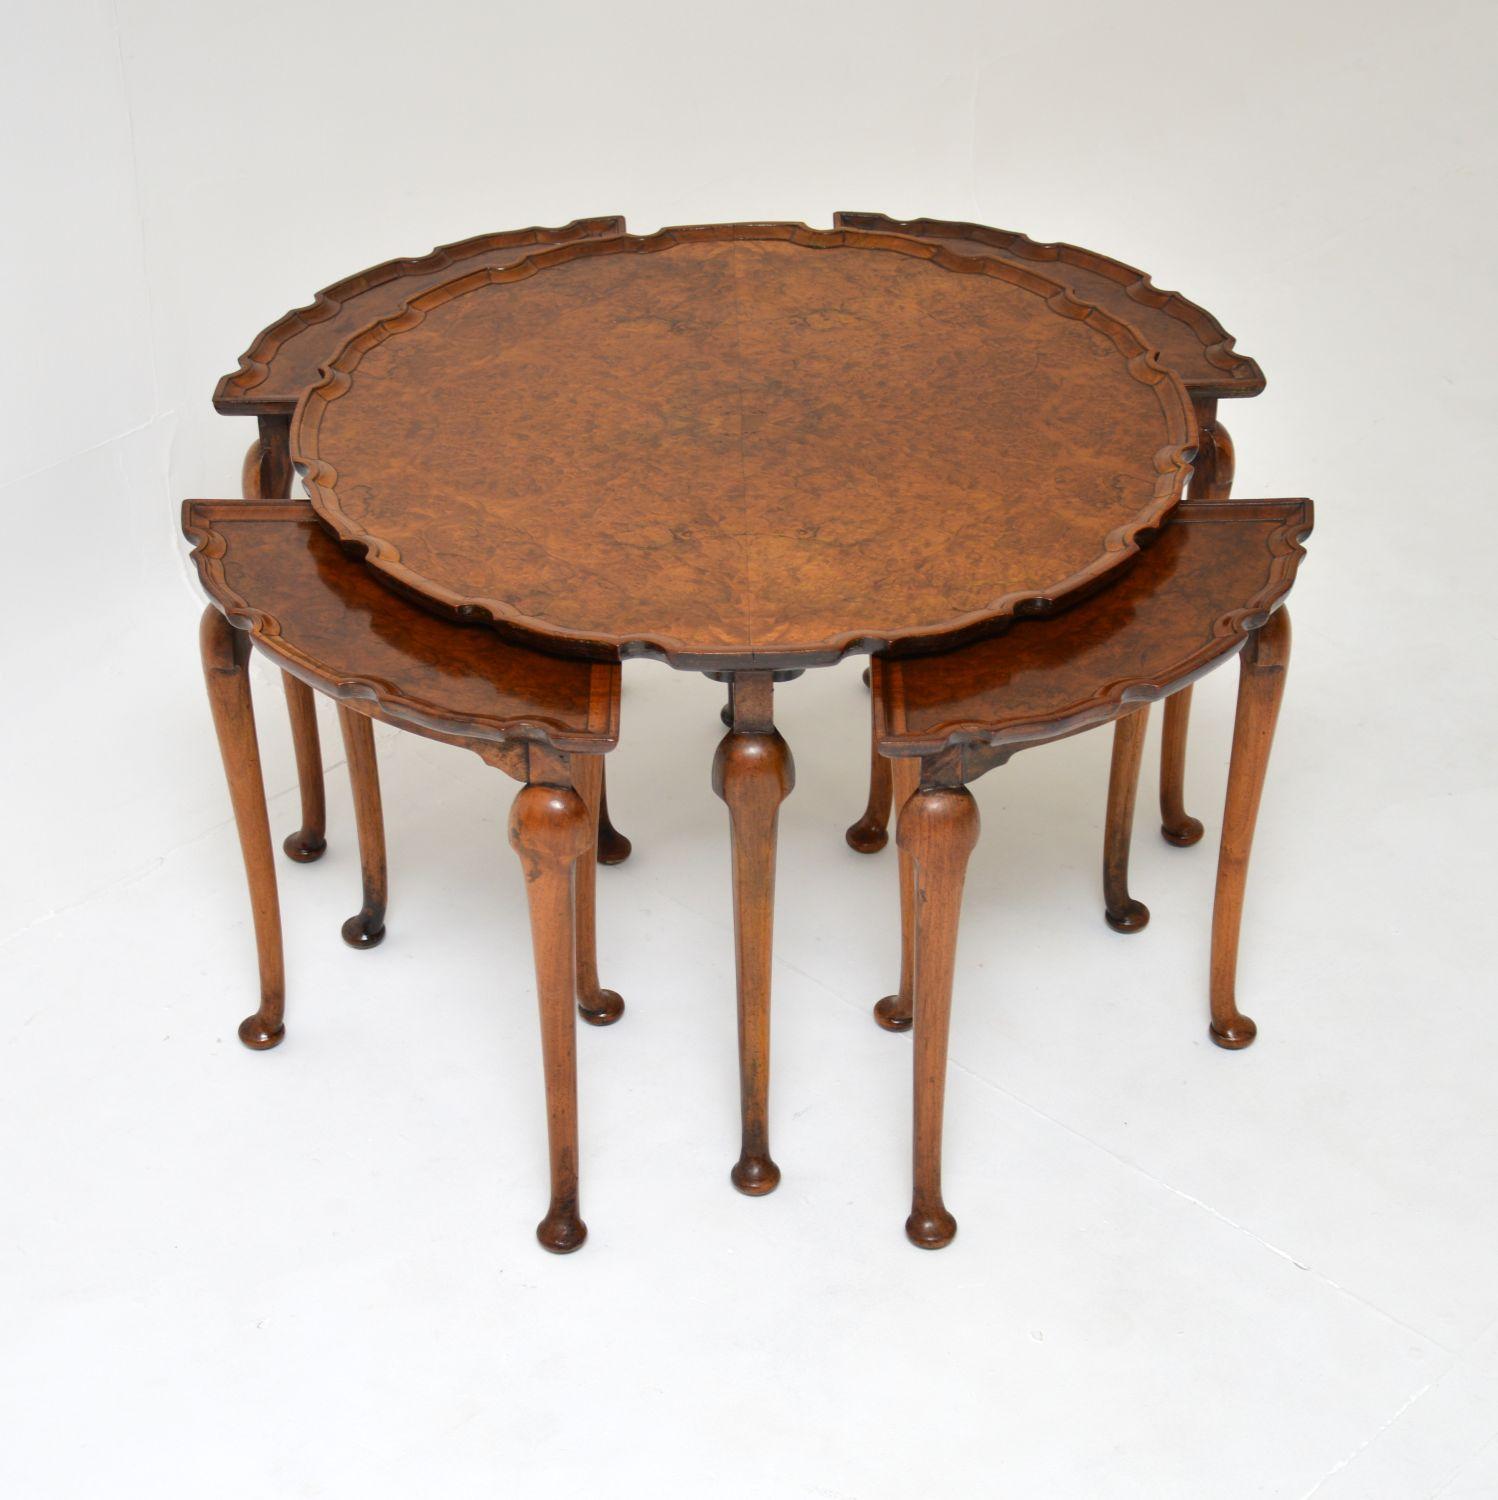 Une belle et très utile table basse gigogne ancienne en ronce de noyer. Fabriqué en Angleterre, il date d'environ 1900-1920.

Il est d'une superbe qualité, avec un design fin, élégant et robuste à la fois. La grande table basse circulaire et les